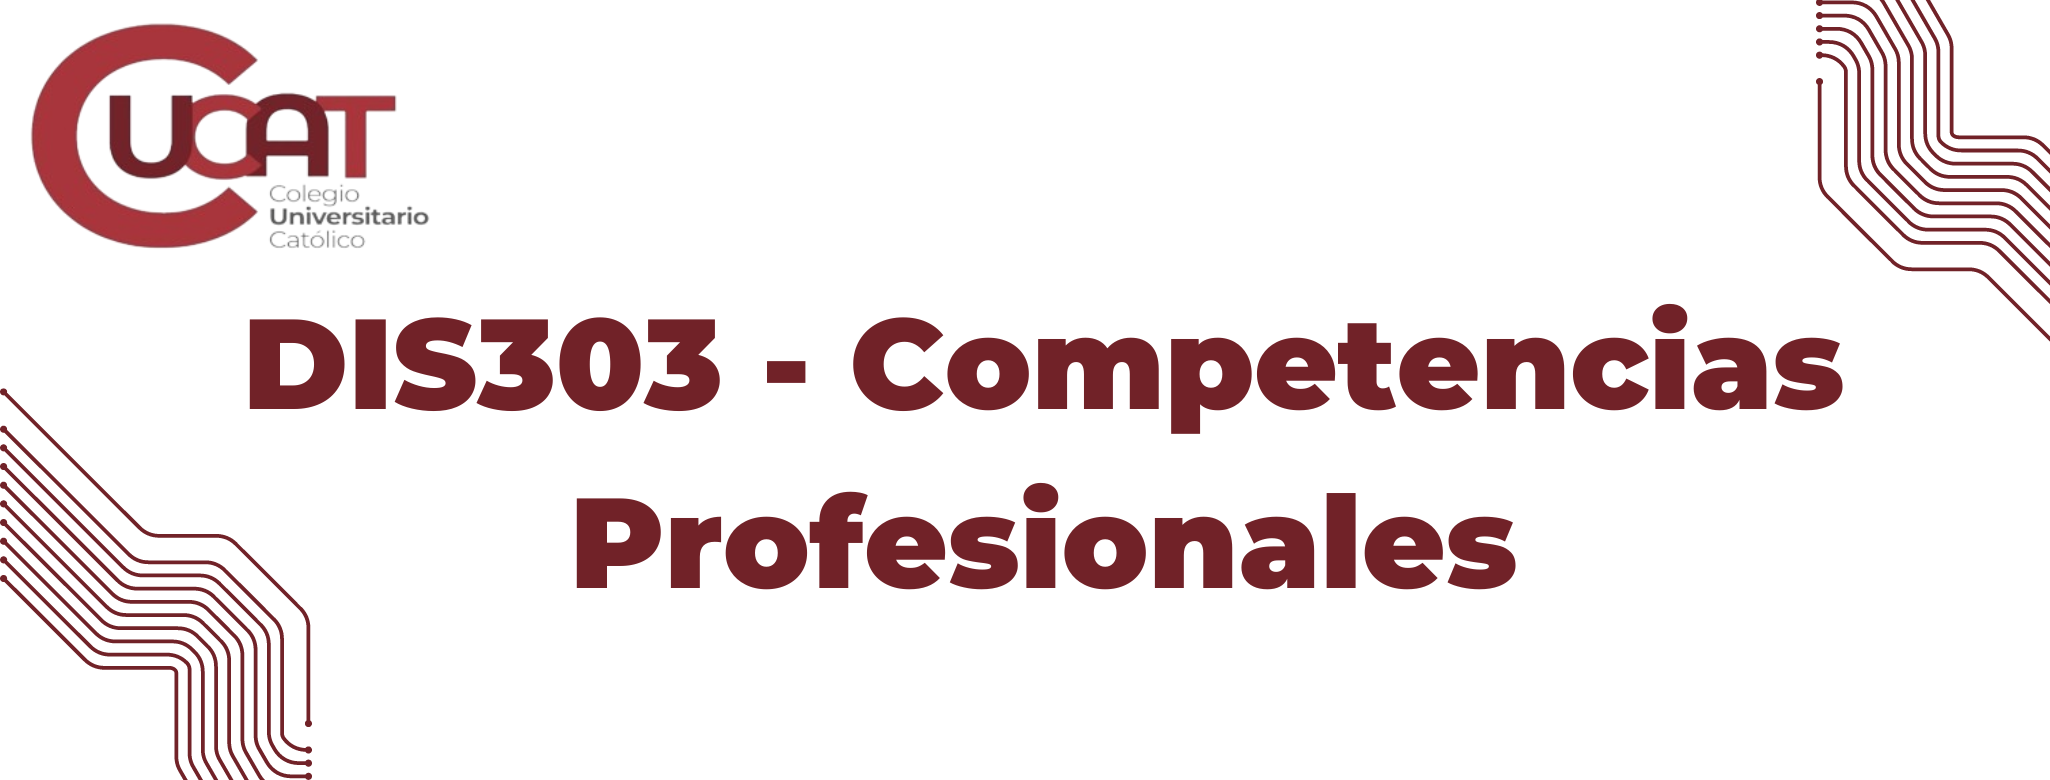 DIS303-Competencias Profesionales